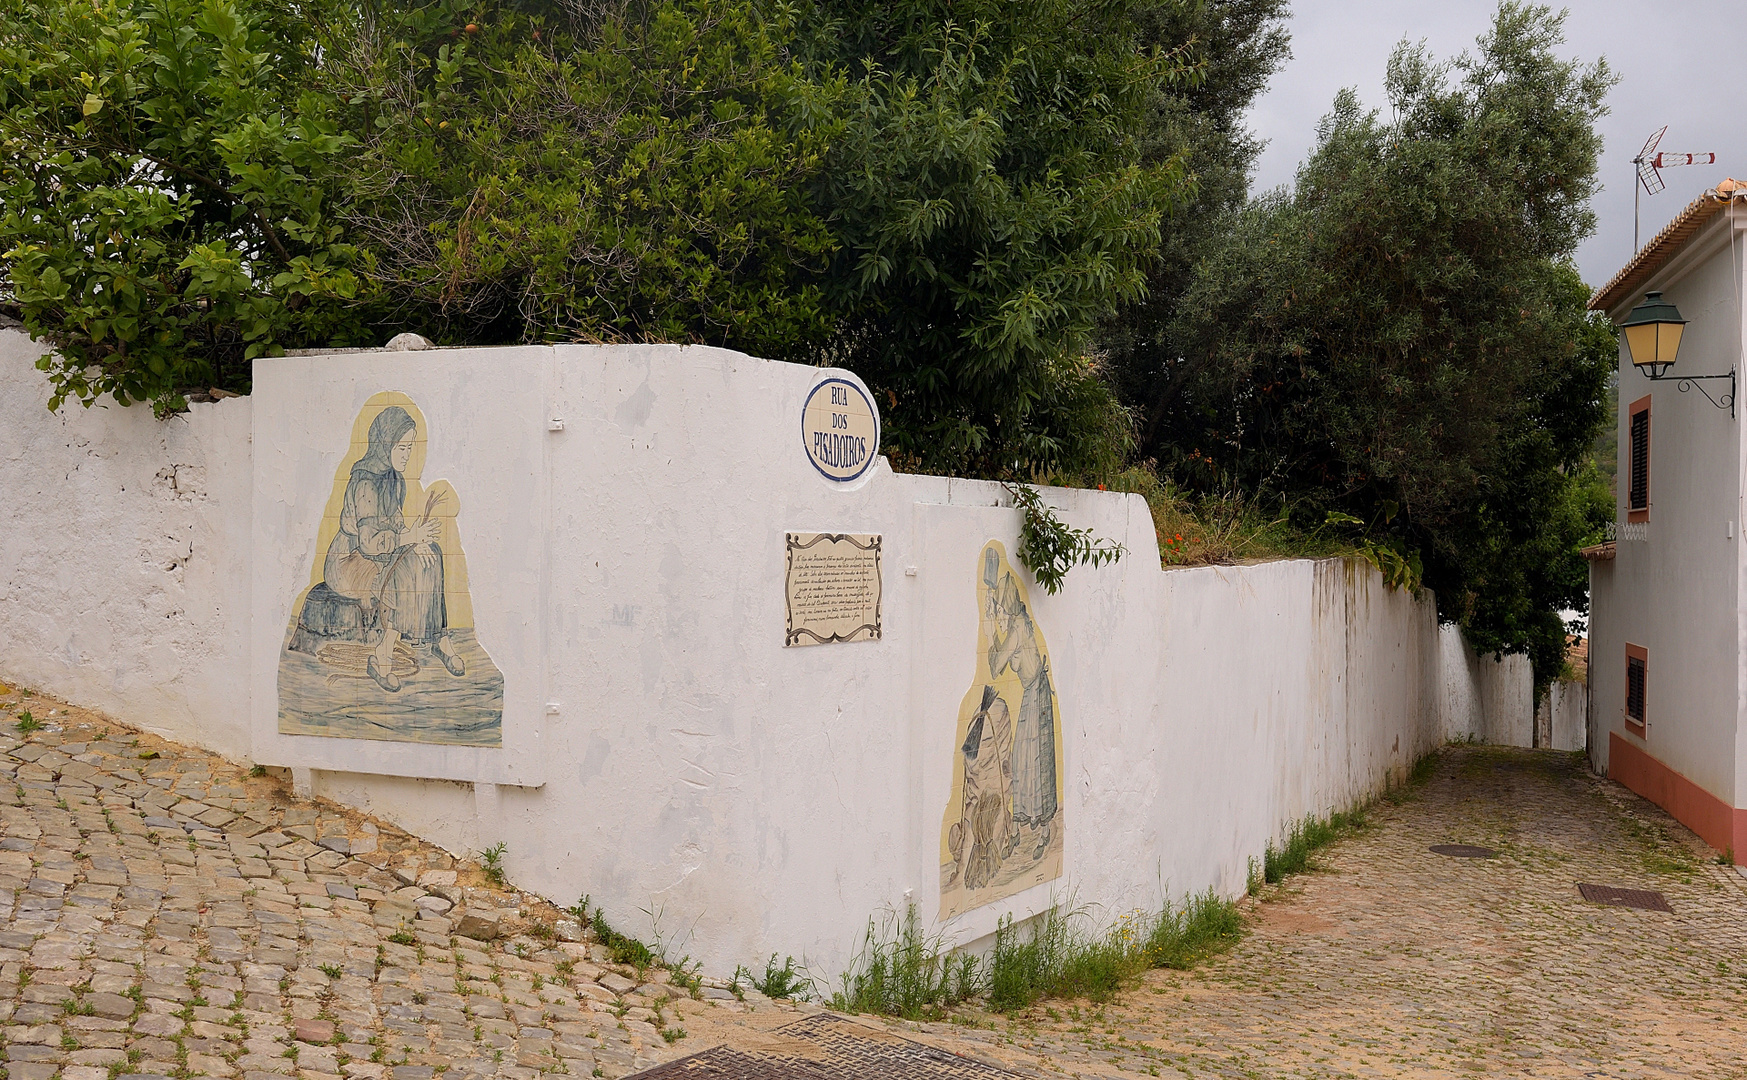 Unterwegs in den Gassen vom Dorf Alte, es ist das typischste und unverfälschste Dorf der Algarve.